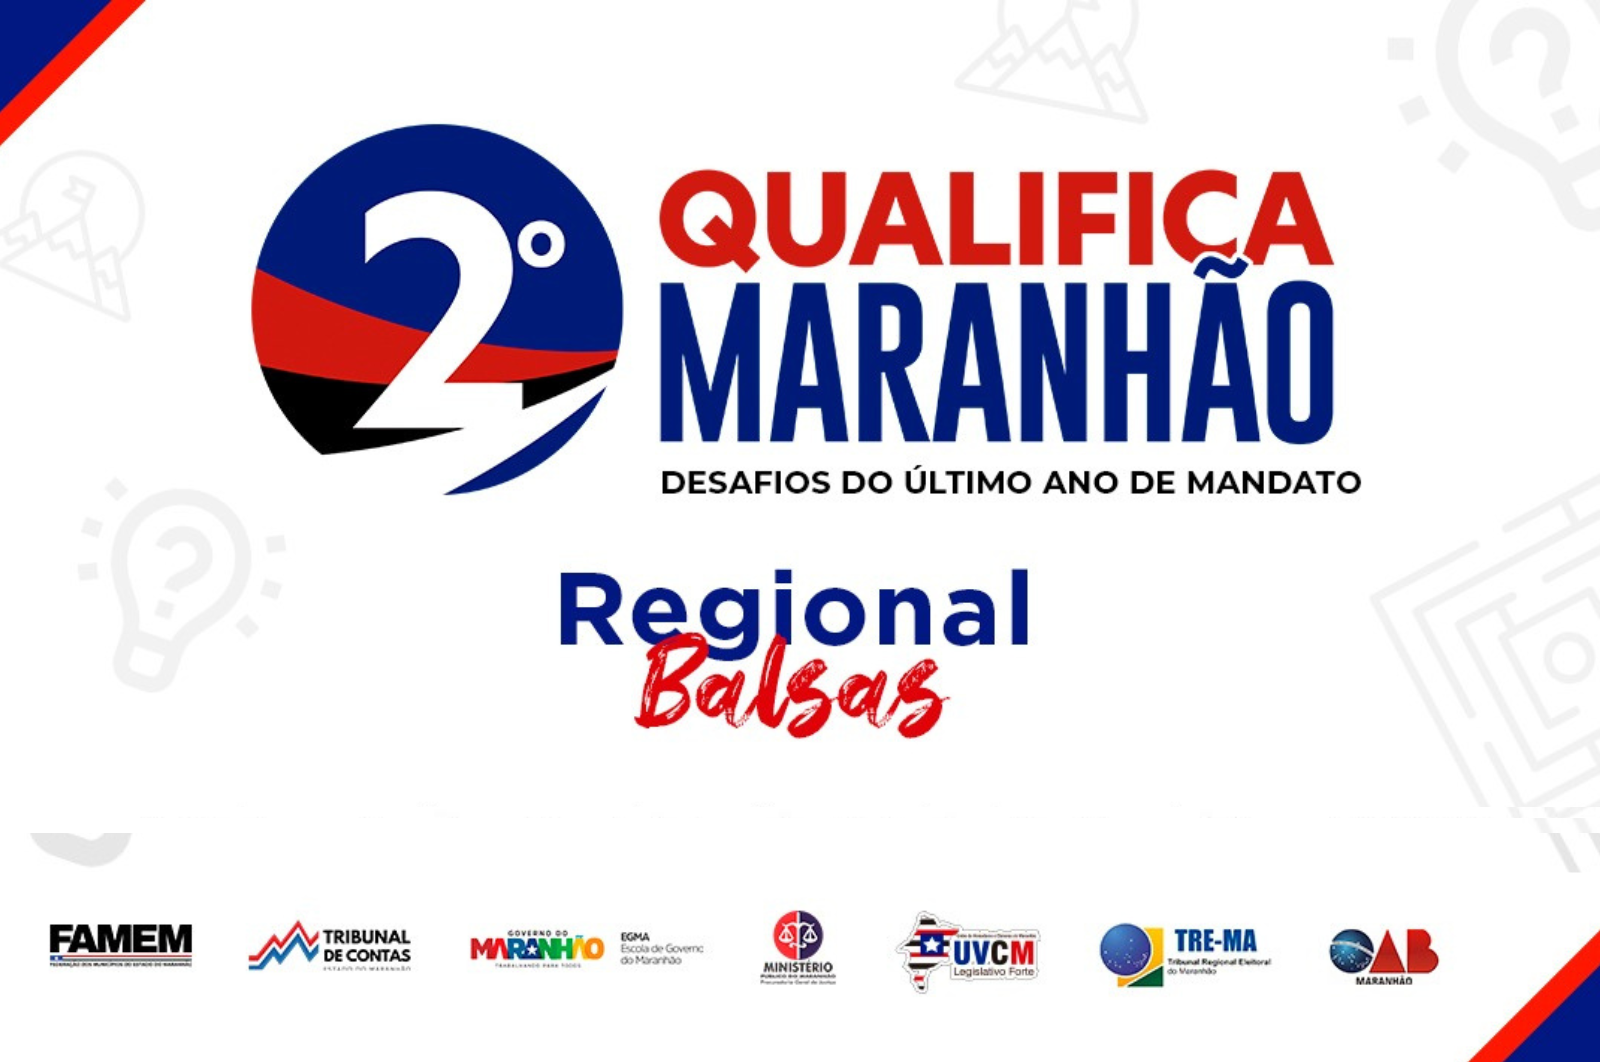 2º Qualifica Maranhão: Desafios do último ano de mandato (Regional Balsas)